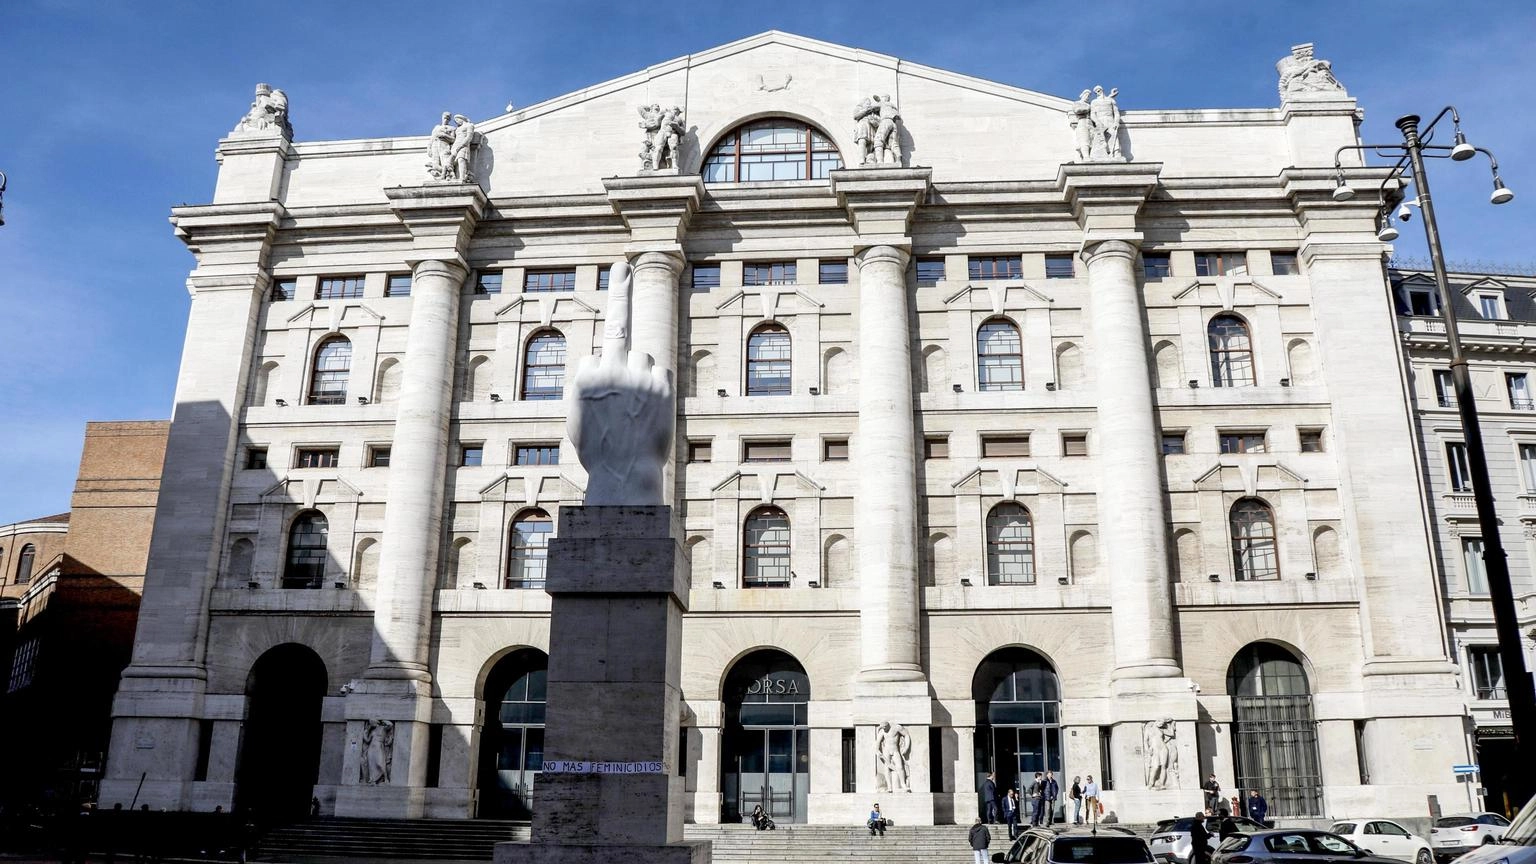 Borsa: Milano chiude in rialzo, Ftse Mib +0,59%